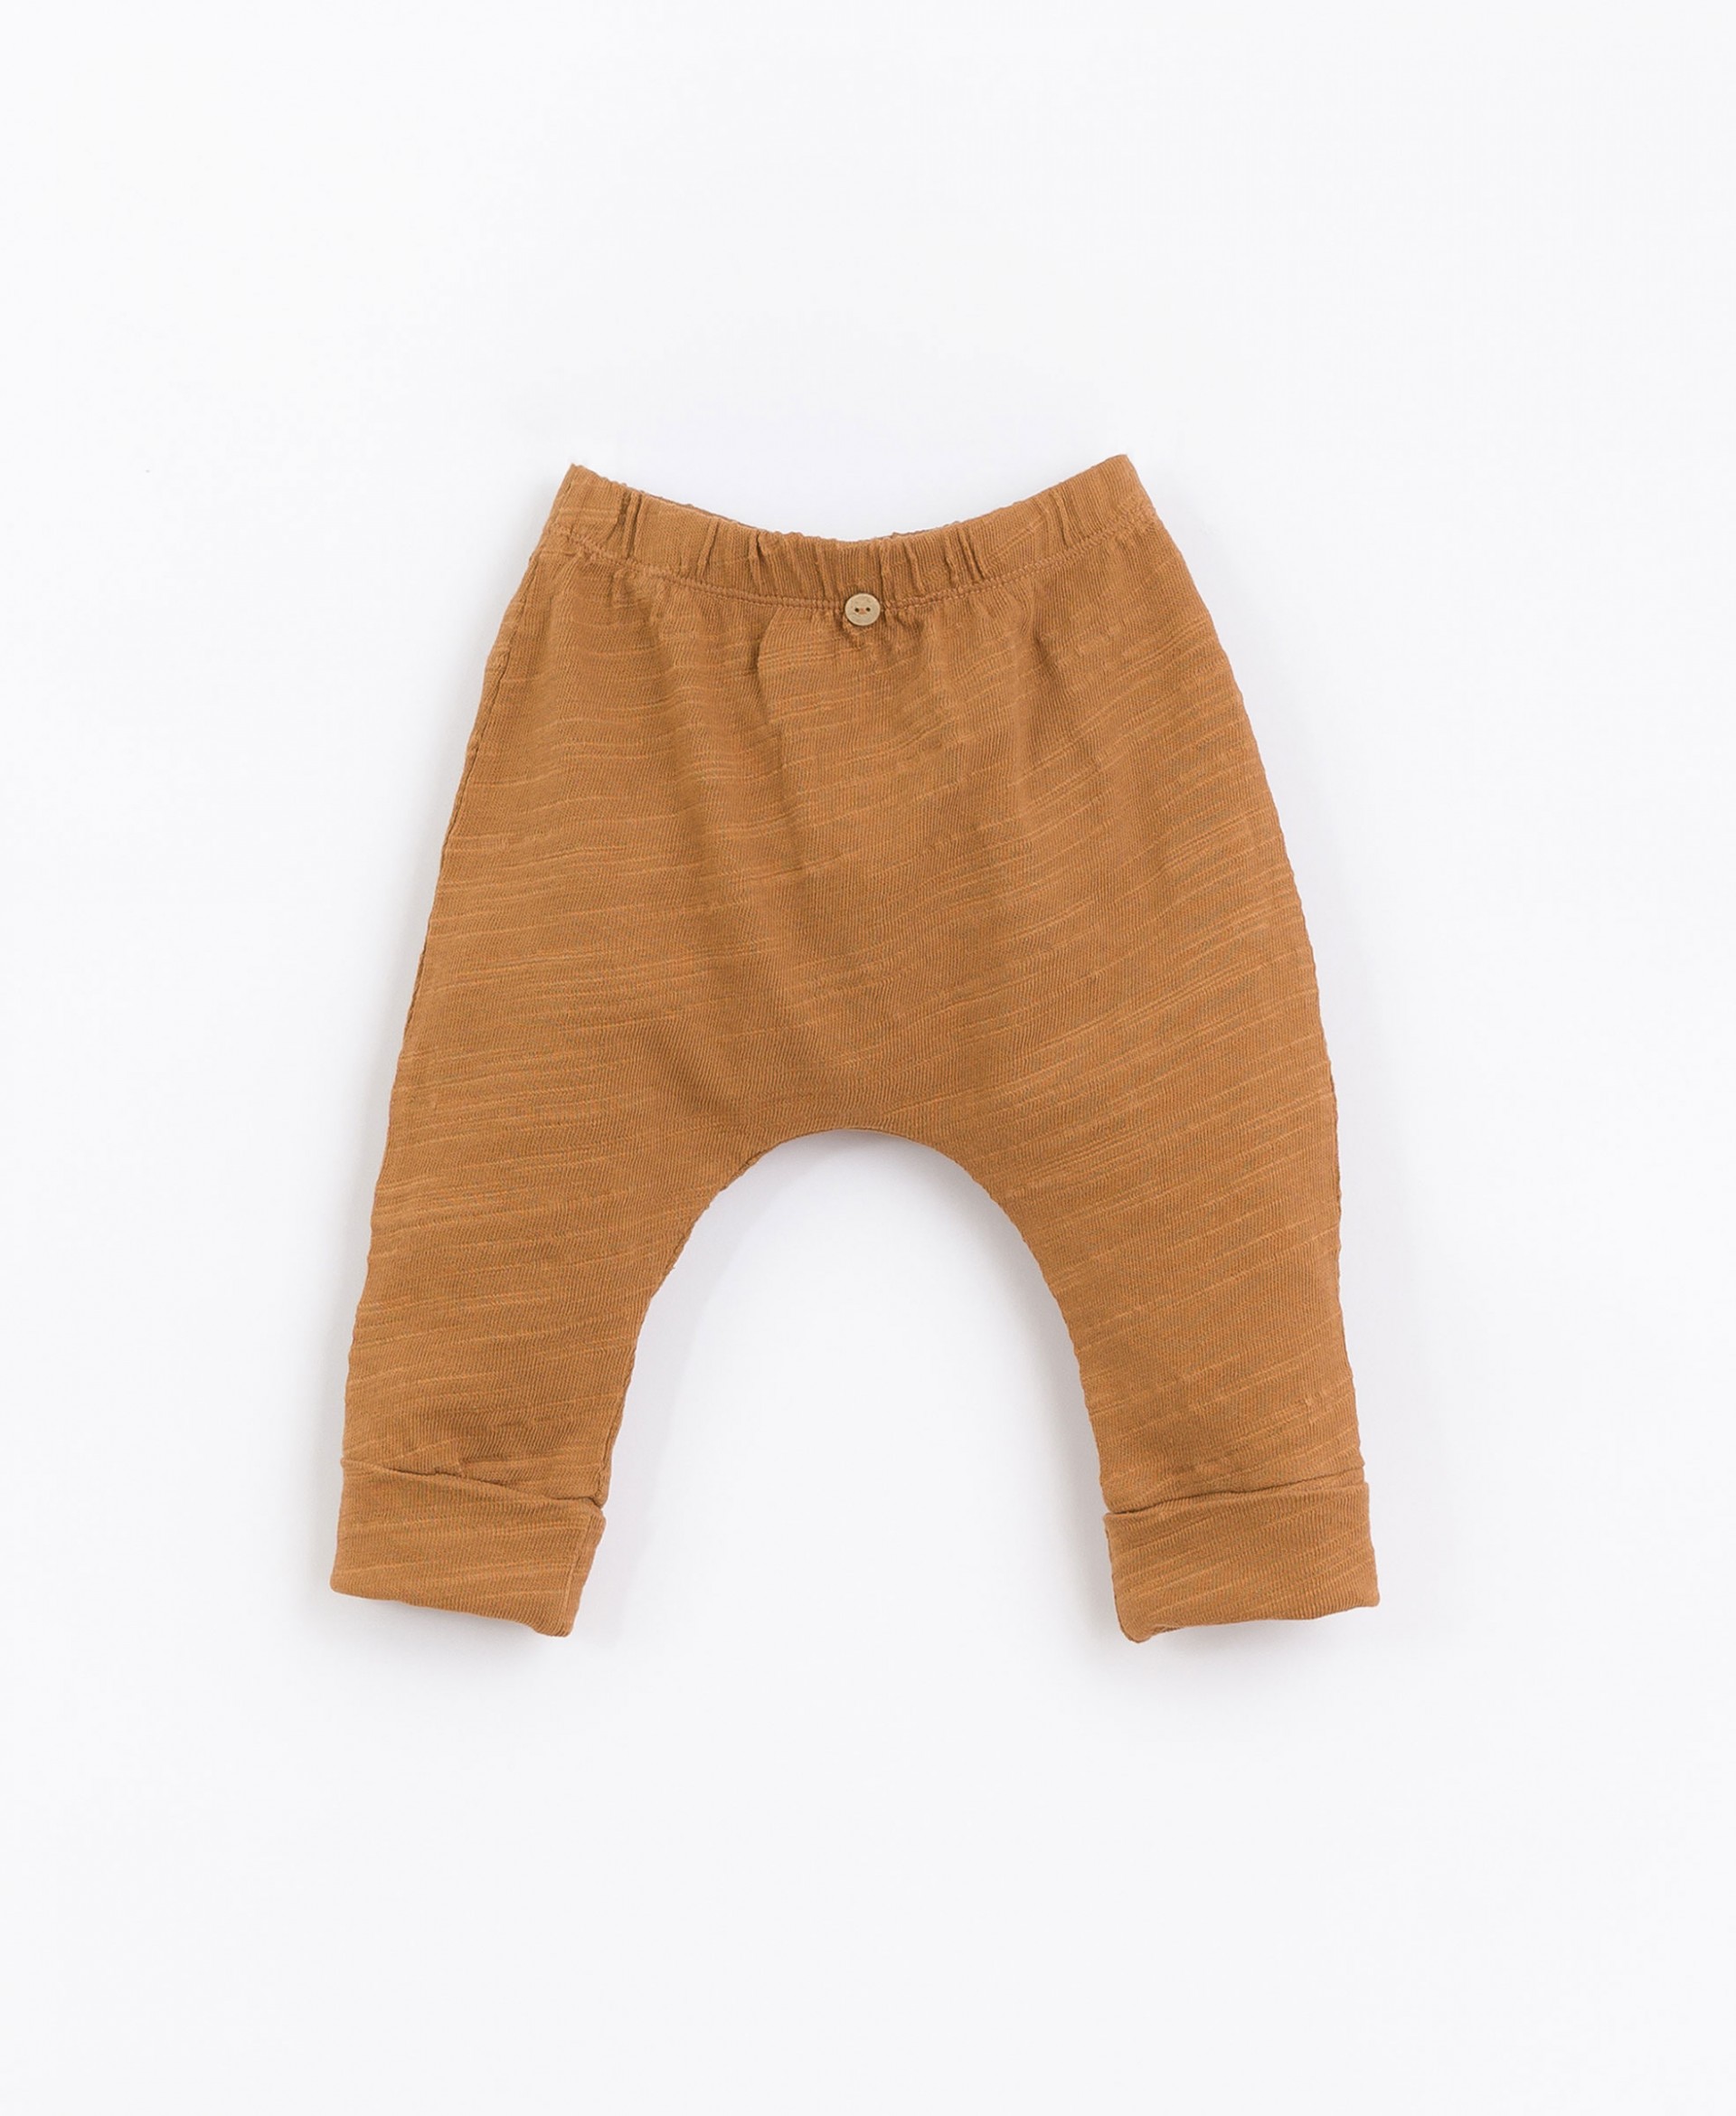 Pantalones fabricados con una mezcla de algodón orgánico y reciclado | Basketry 